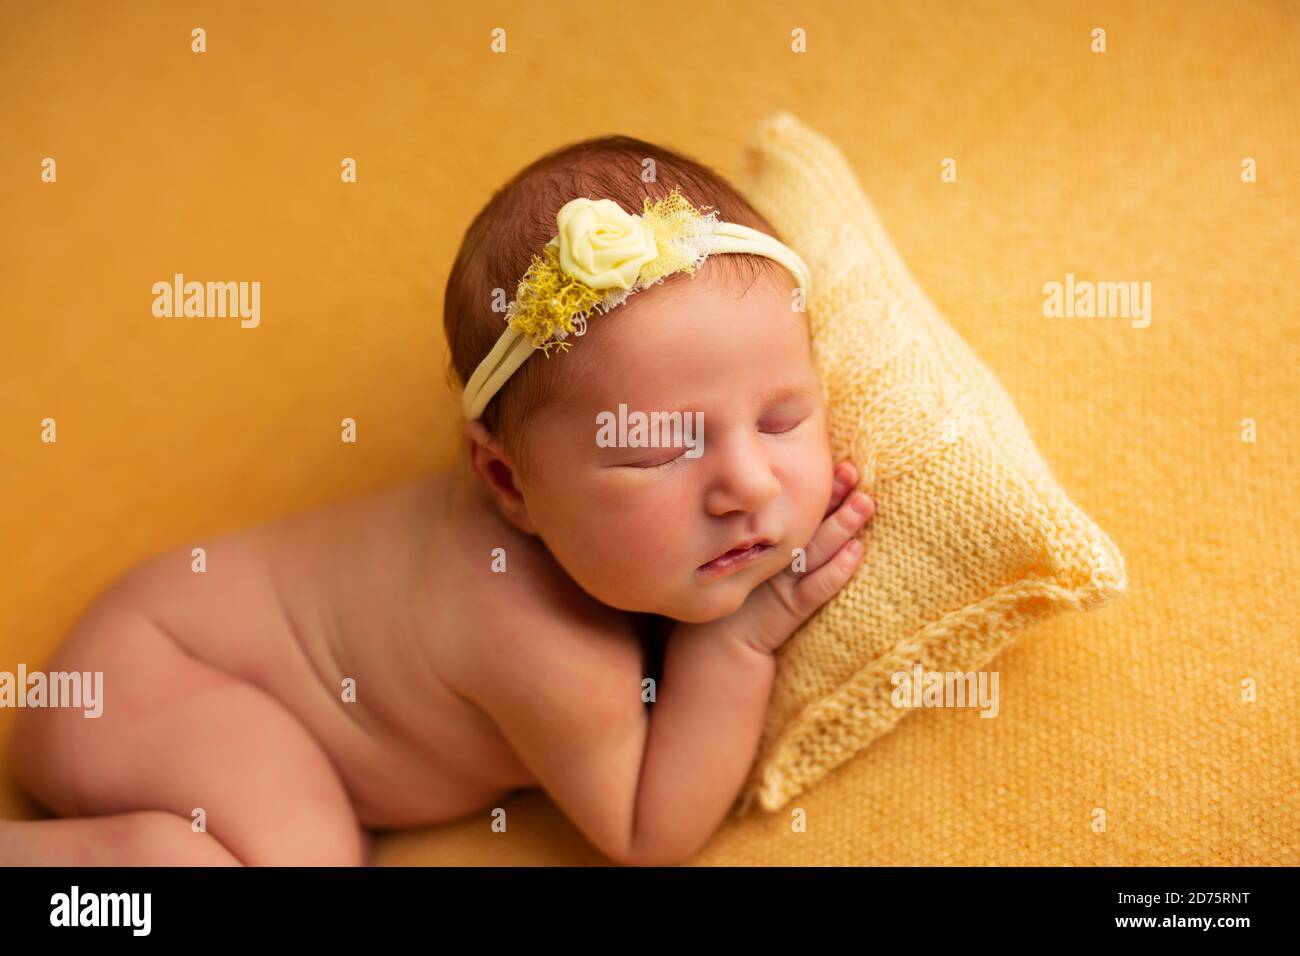 Porträt eines schönen sieben Tage alten Mädchen. Sie schläft in einer zusammengerollten fetalen Position auf einer gelben Decke Stockfoto